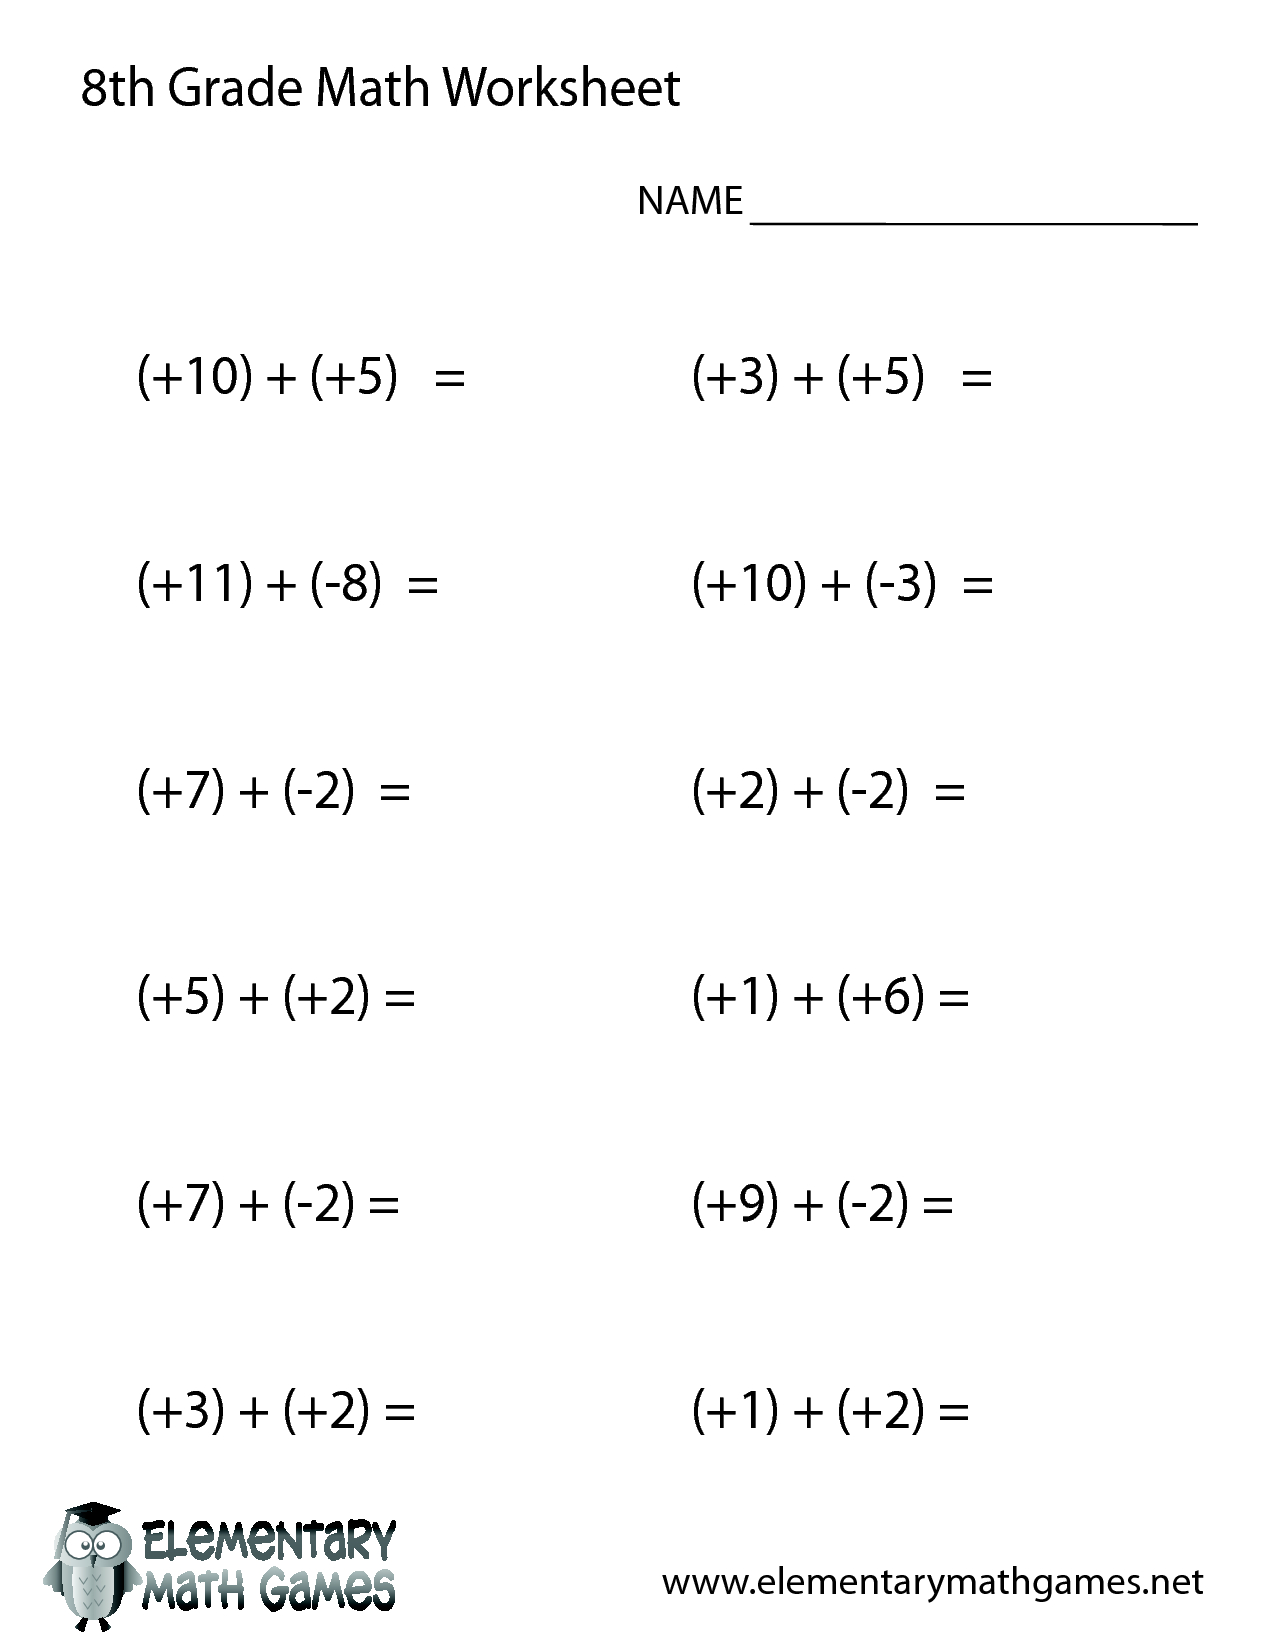 8Th Grade Math Worksheets Printable | Sub Worksheets | 8Th Grade | Free Printable Math Worksheets For 7Th 8Th Graders